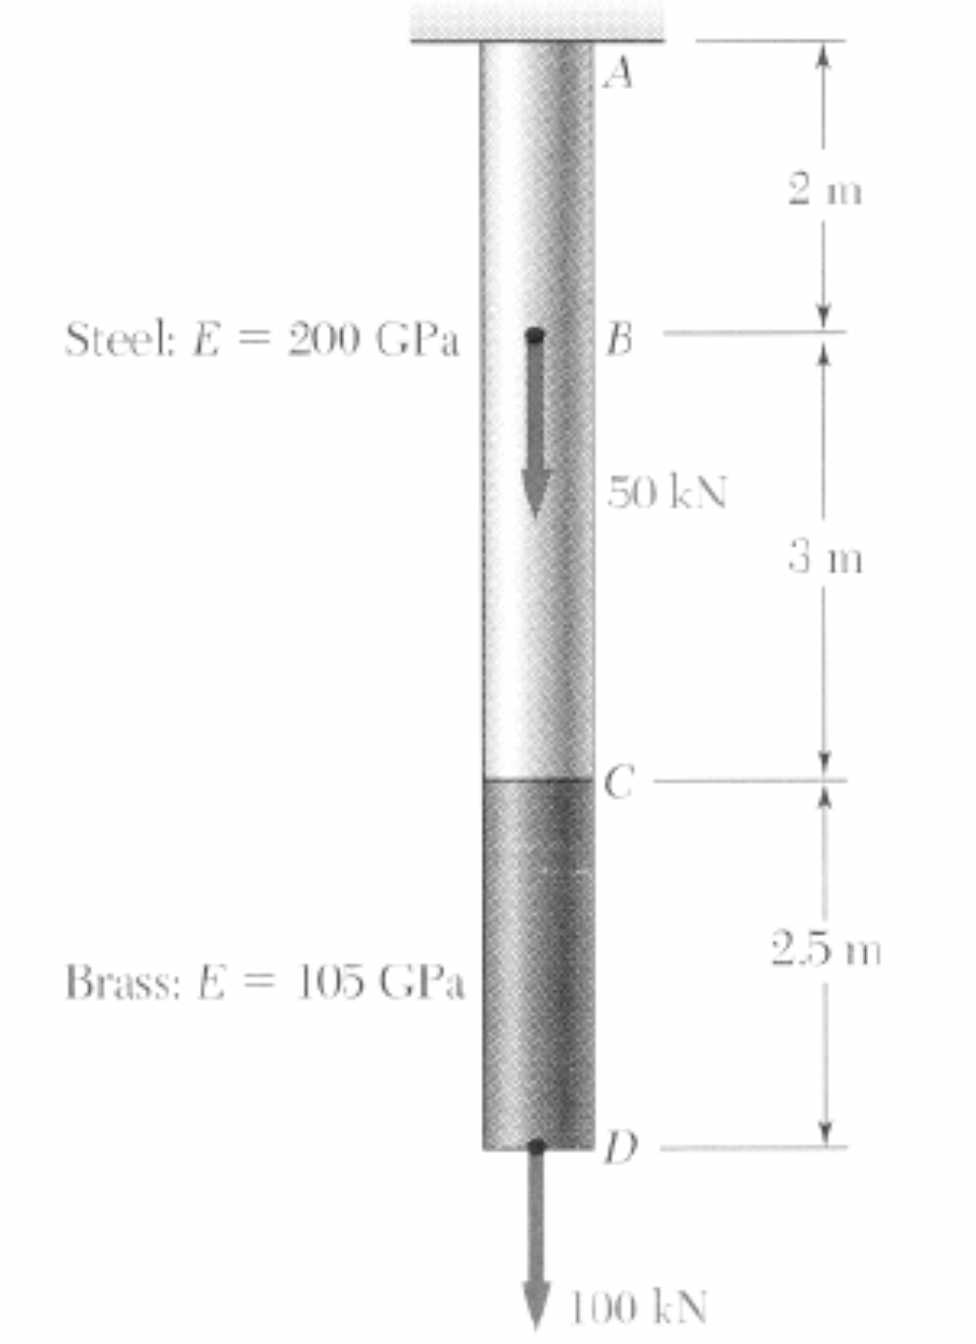 Steel: E200 GPa
Brass: E= 105 GPa
A
B
50 kN
C
D
100 KN
2 m
3 m
2.5 m